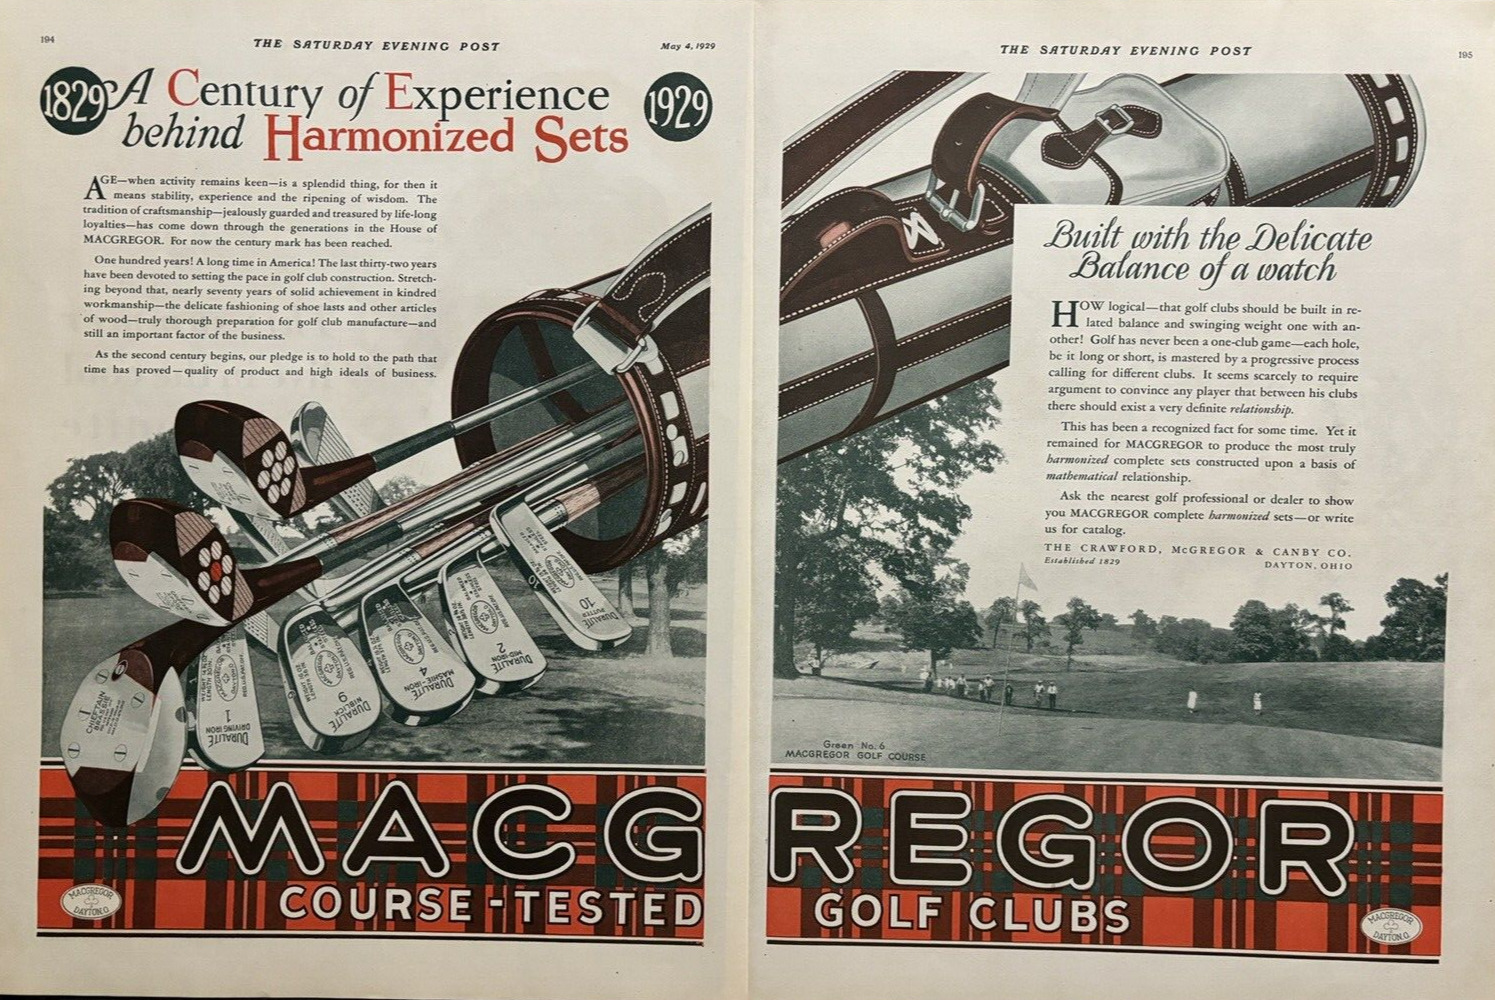 MACGREGOR GOLF CLUBS ESTABLISHED 1829 DAYTON, OHIO 2 PAGE VINTAGE PRINT AD 1929.